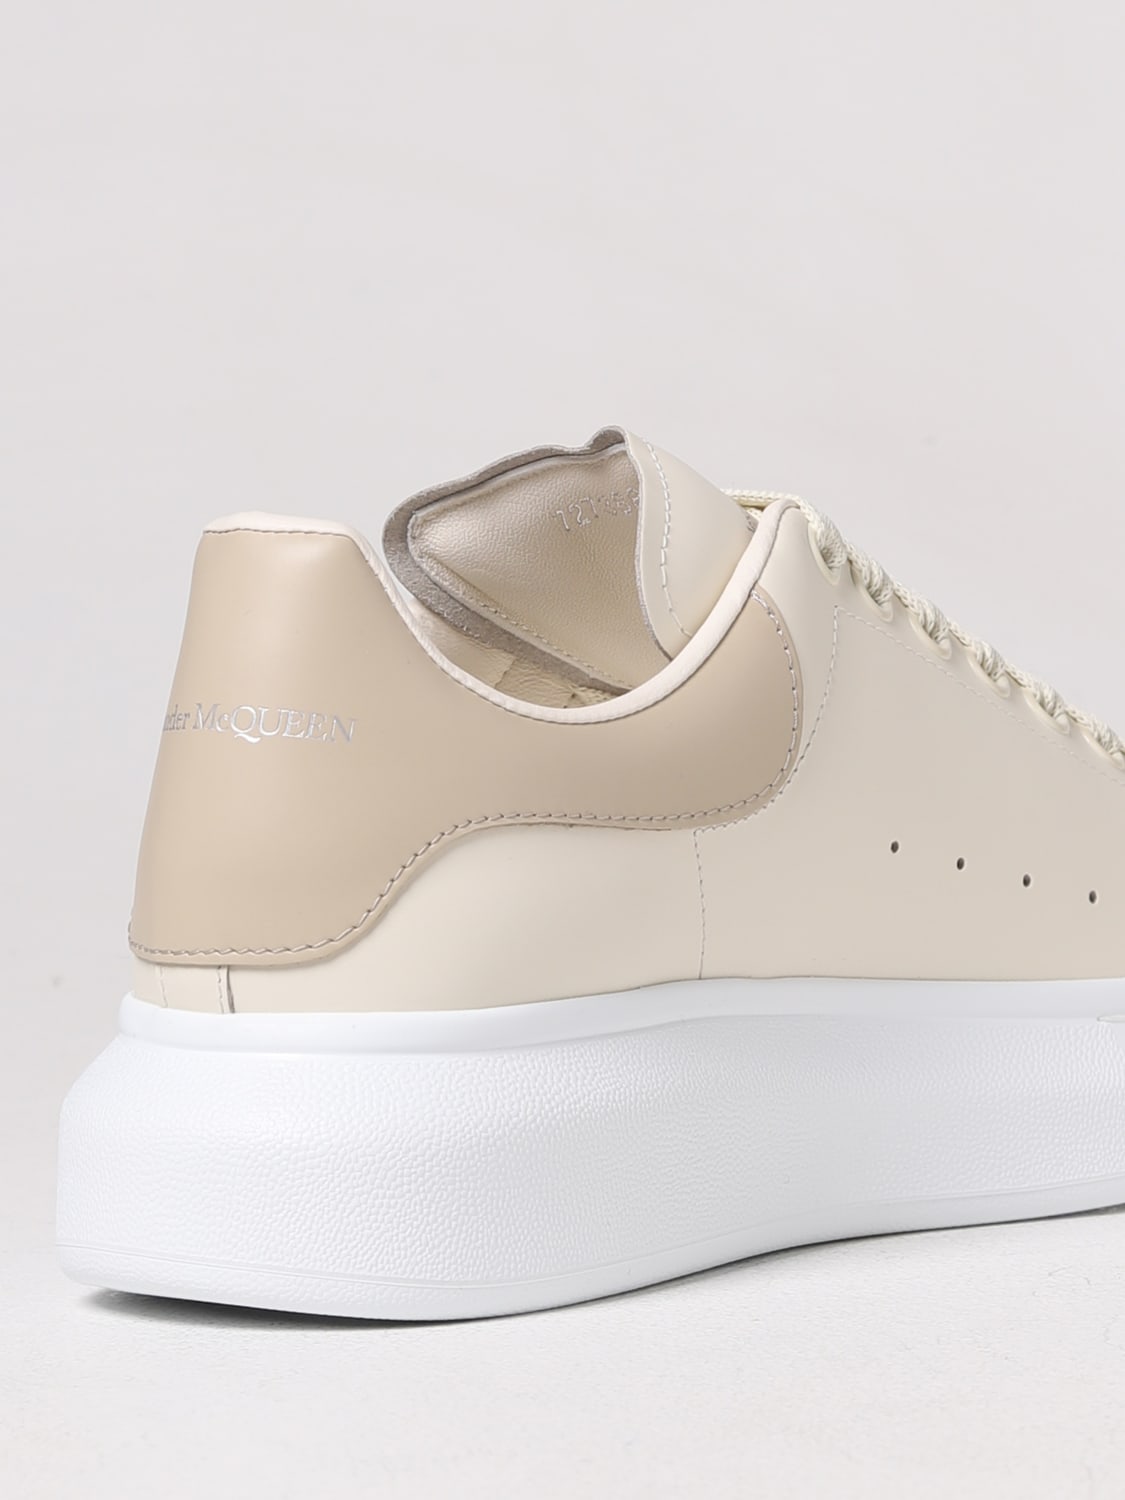 ALEXANDER MCQUEEN: Larry sneakers in smooth leather - Beige | Alexander ...